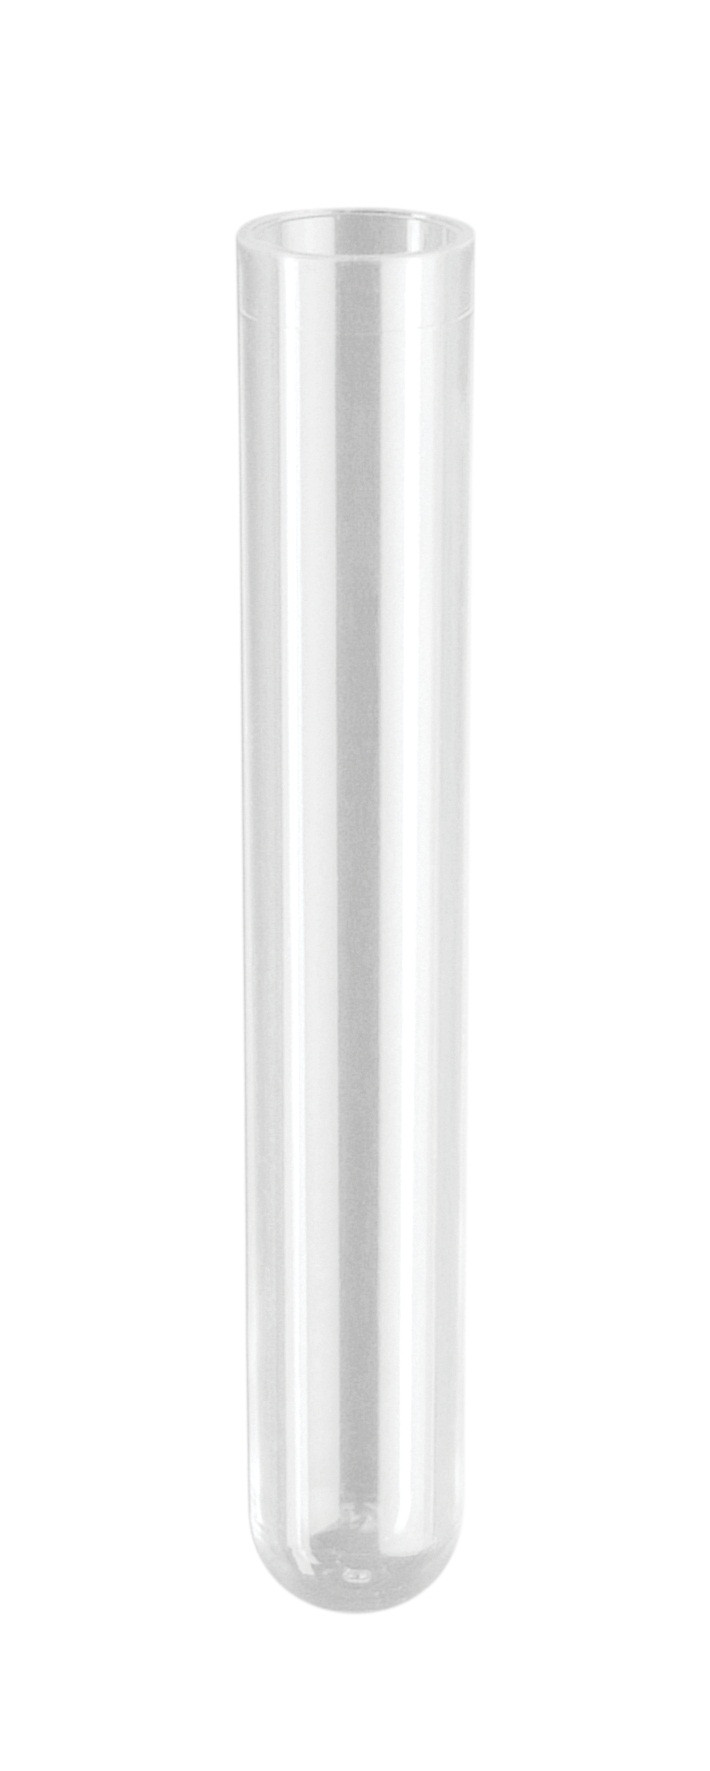 Coagulometer-Röhrchen, Ø x H 12 x 55 mm, PS, 4 ml, Boden rund, Beutel 1 x 1 000 Stk.